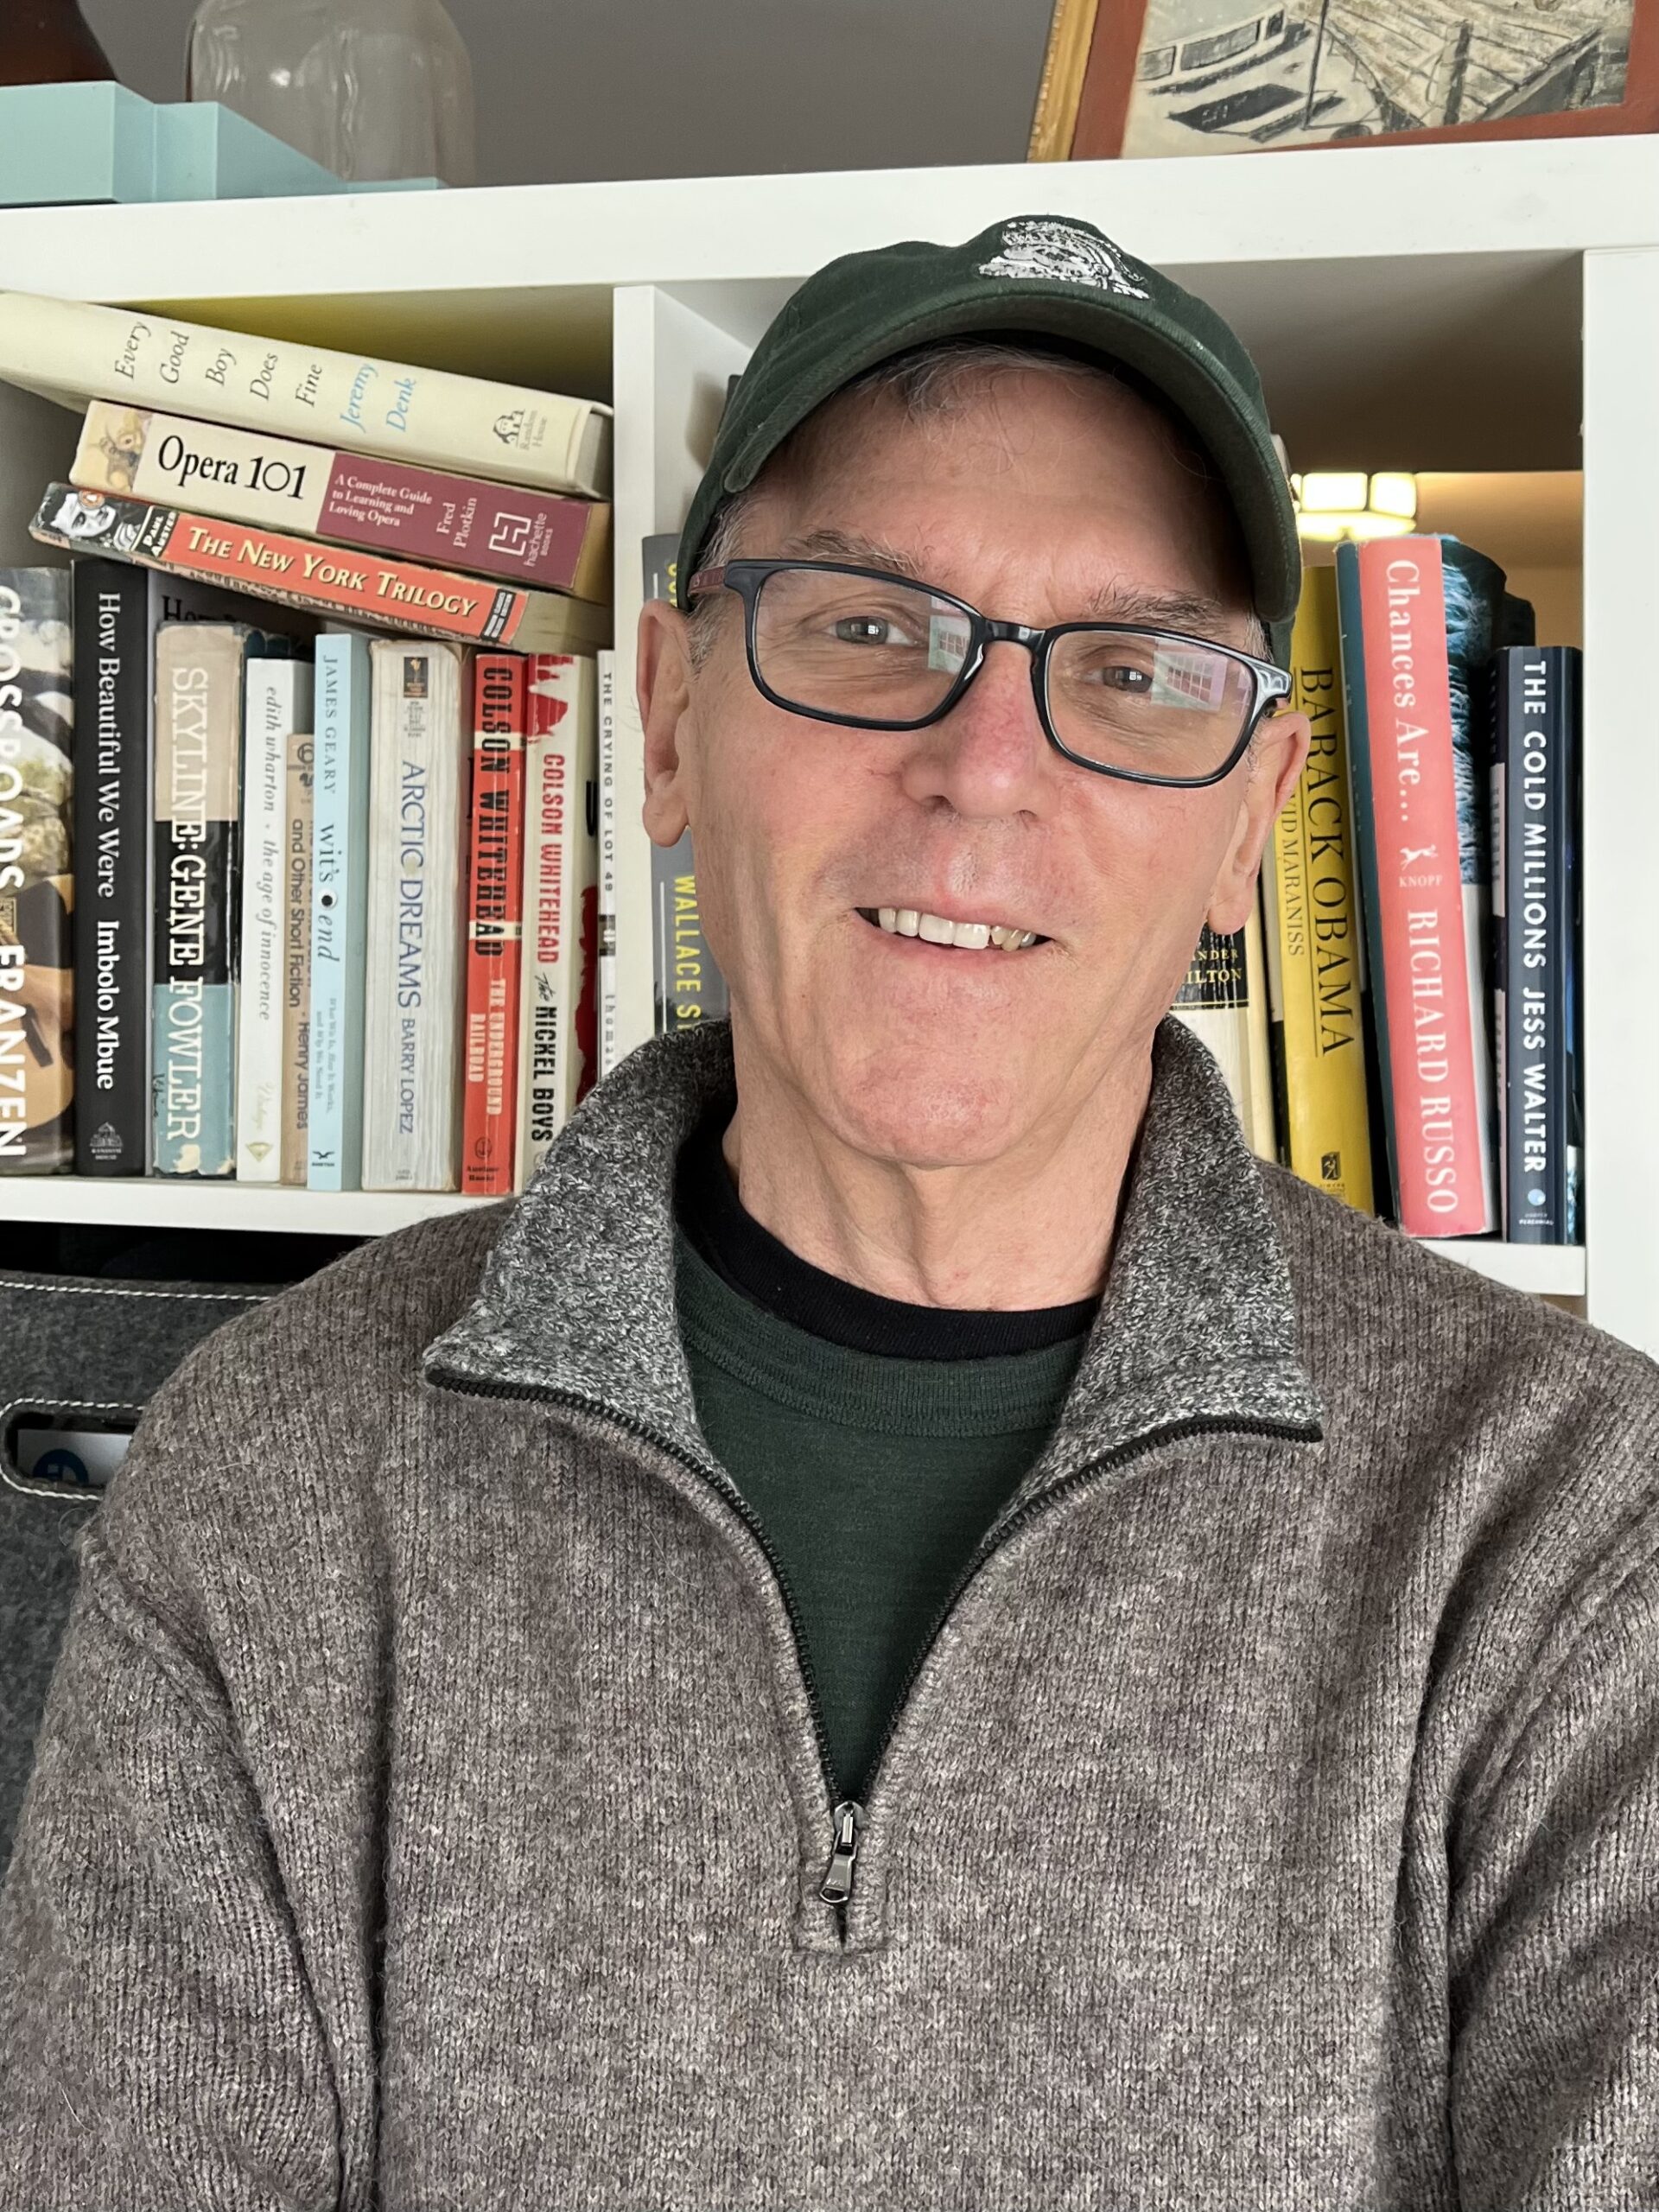 El voluntario Steve Giegerich lleva gafas negras cuadradas, una gorra de béisbol negra y un suéter gris. Está parado frente a una estantería y sonriendo.